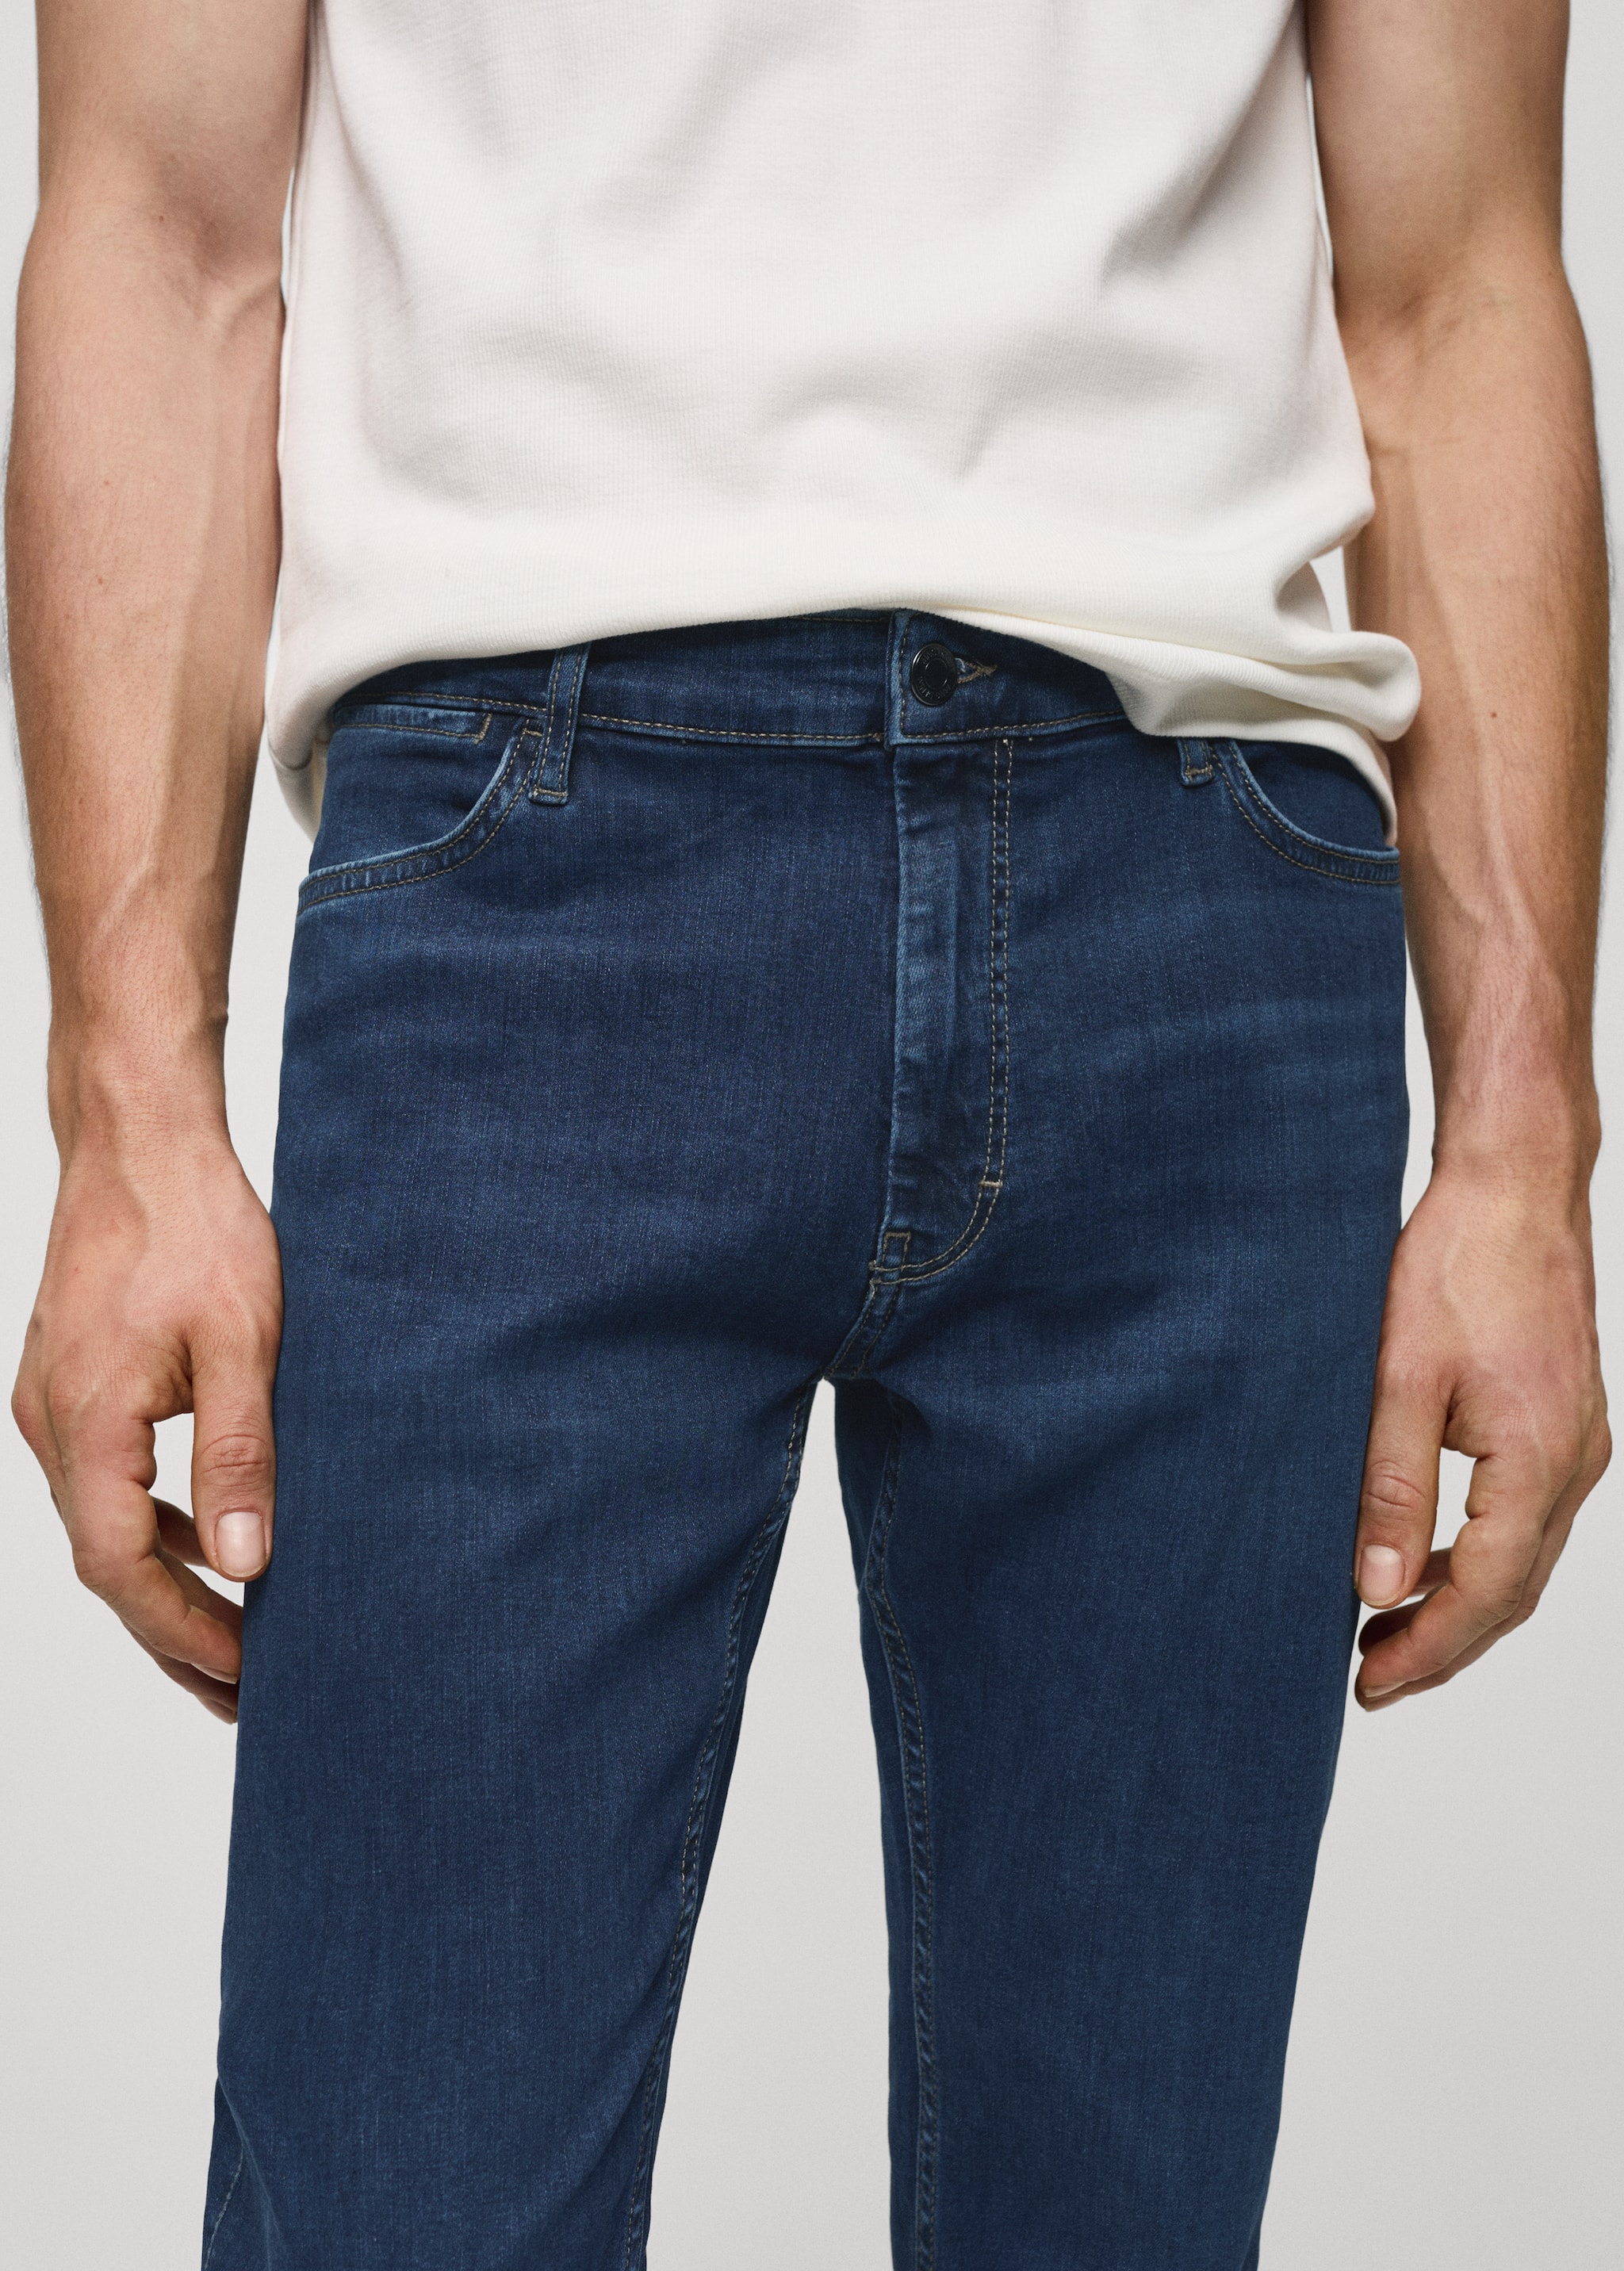 Jeans Patrick slim fit Ultra Soft Touch - Pormenor do artigo 1